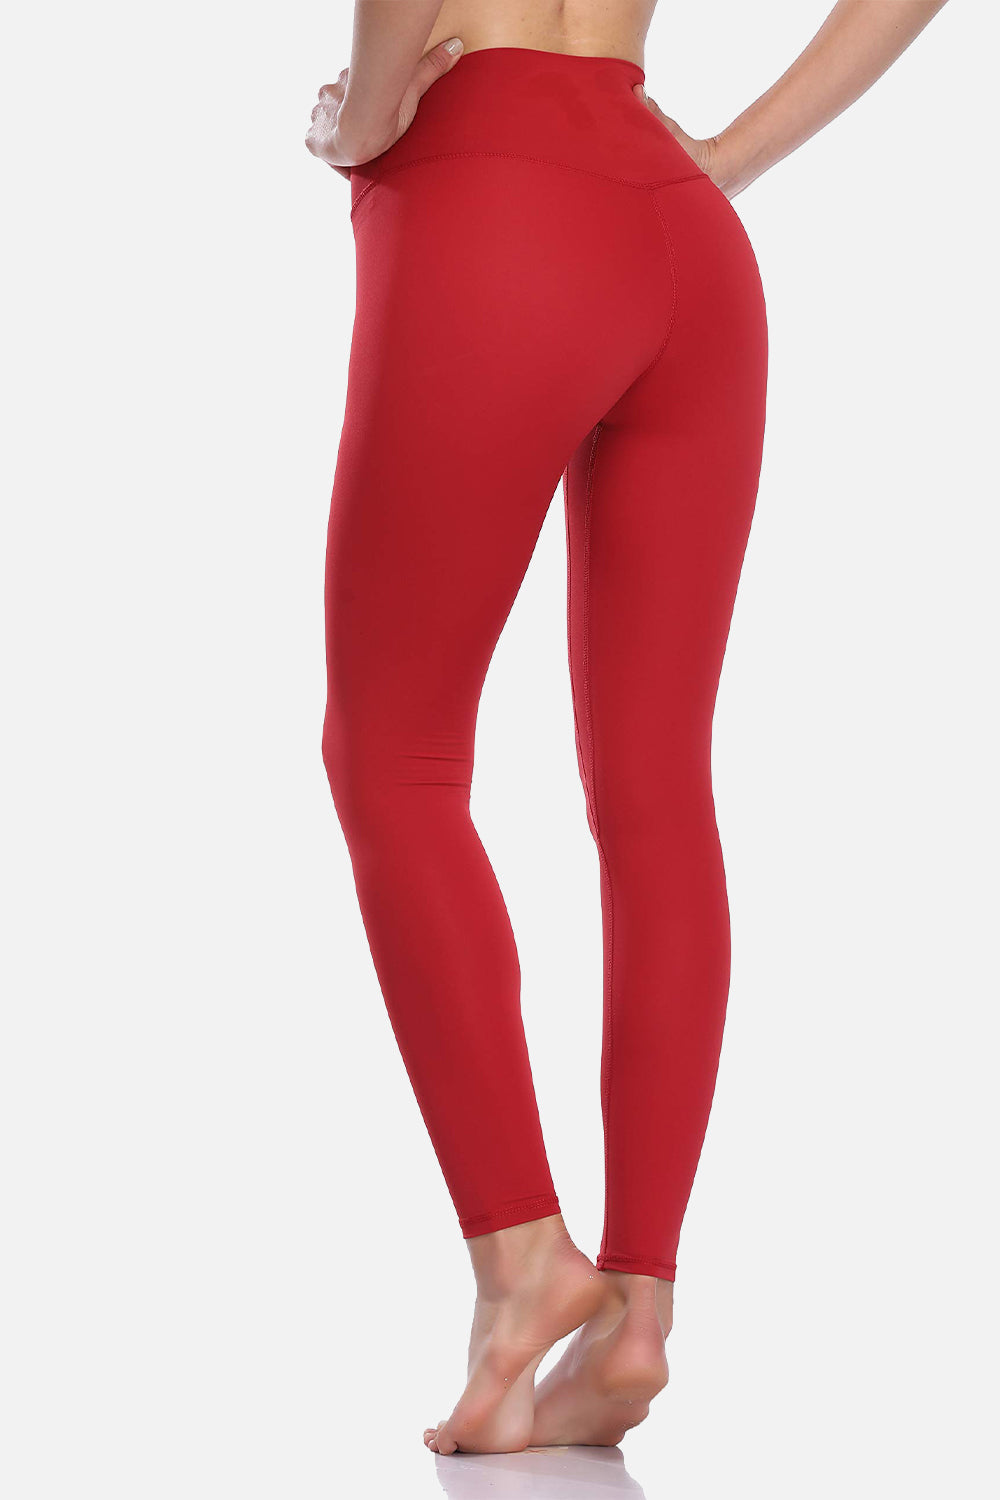 Colorfulkoala Womens Buttery Soft High Waisted Yoga Pants 78 Length Leggings  (Xl